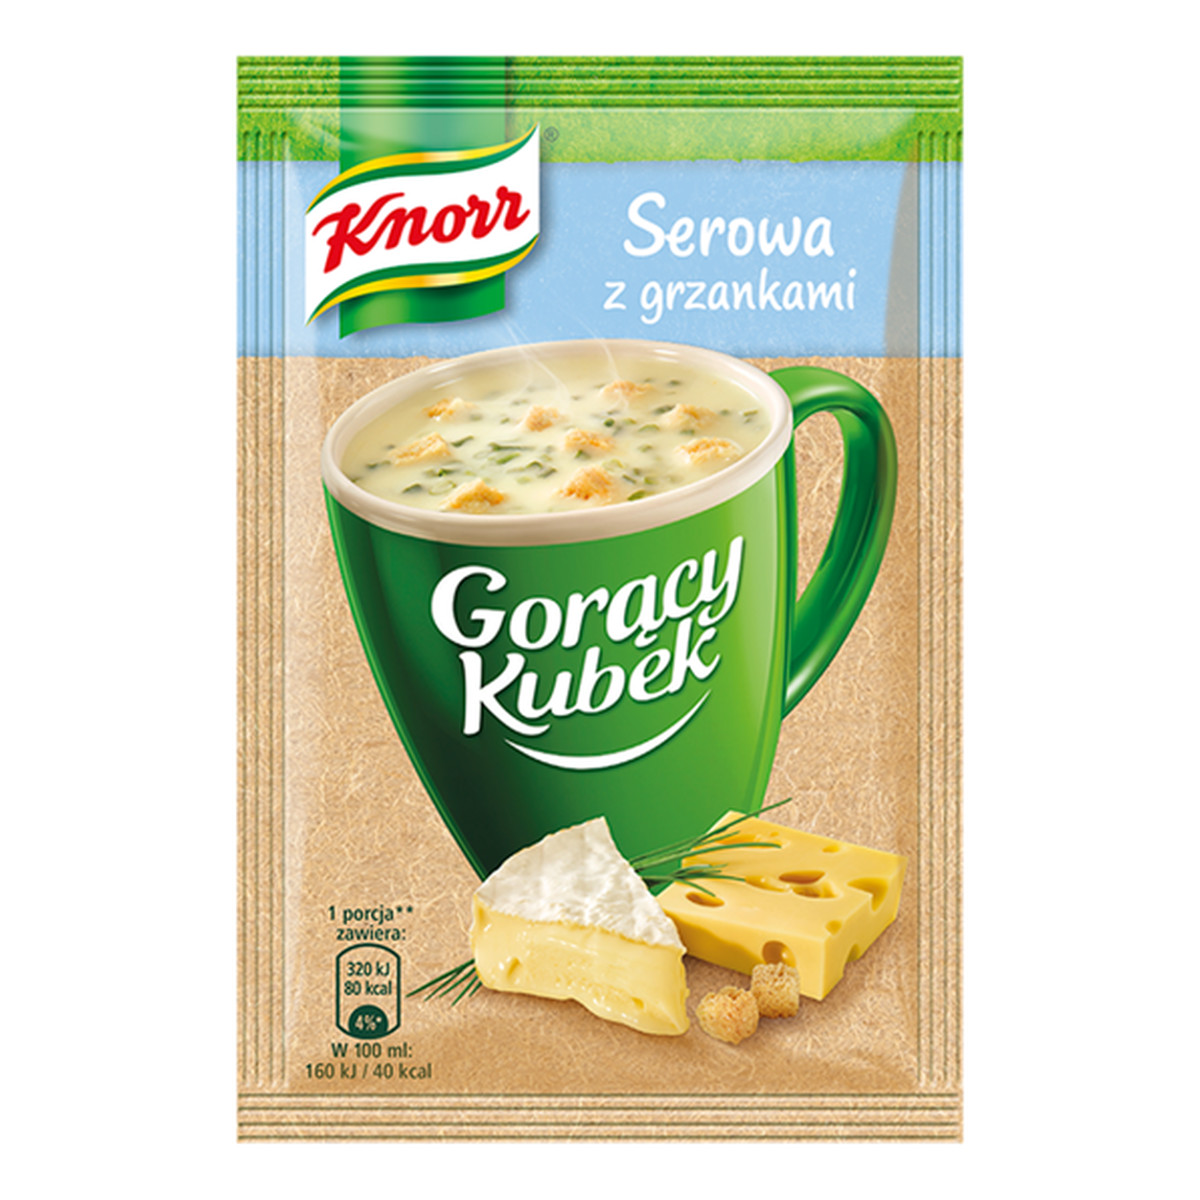 Knorr Gorący Kubek Serowa z grzankami 22g